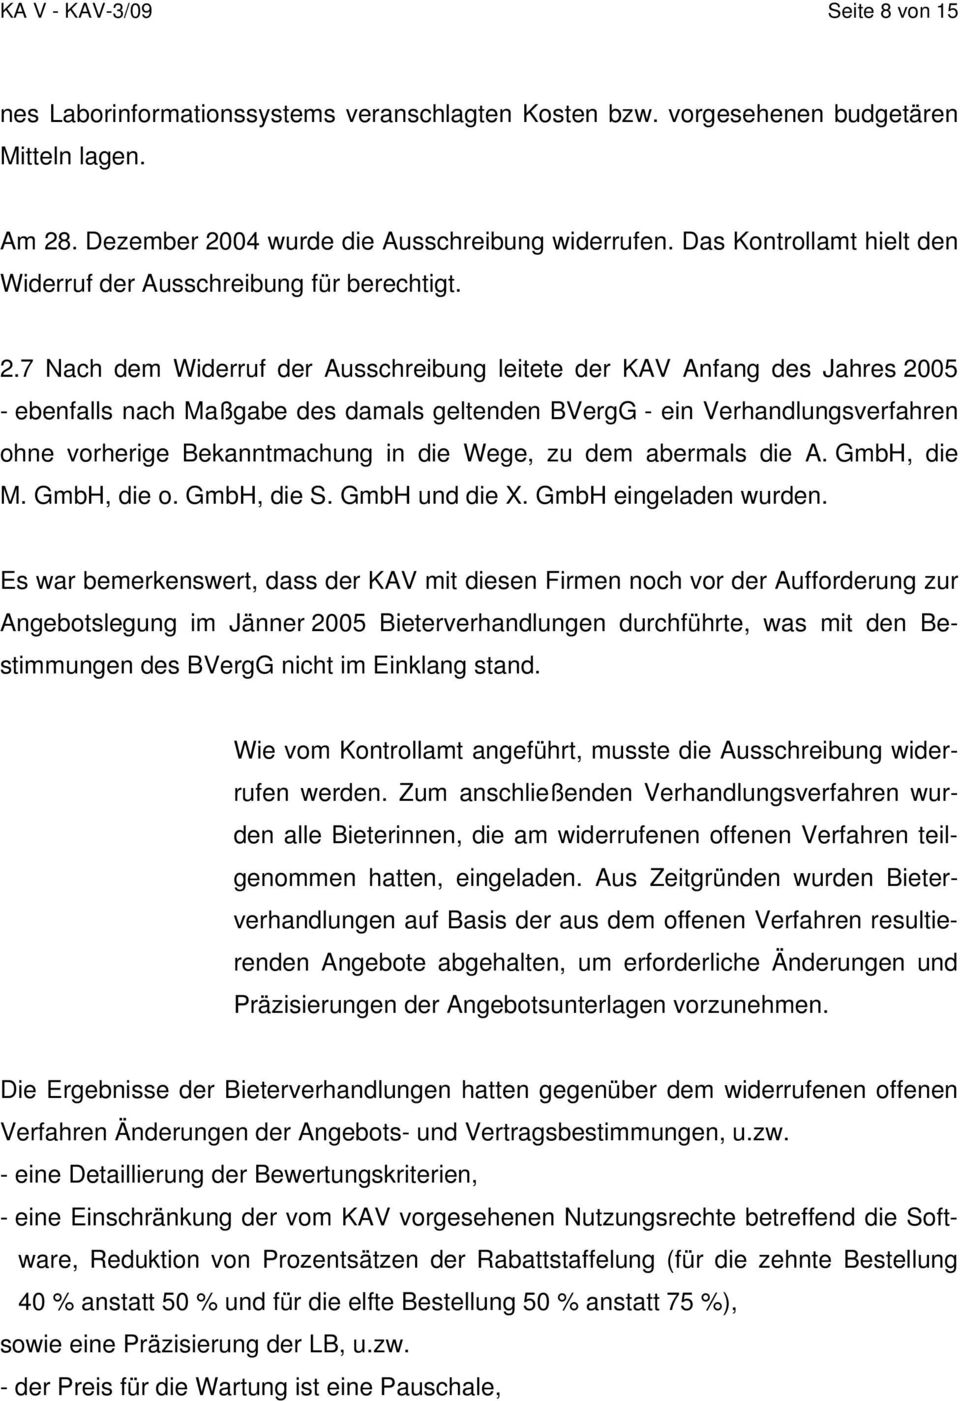 7 Nach dem Widerruf der Ausschreibung leitete der KAV Anfang des Jahres 2005 - ebenfalls nach Maßgabe des damals geltenden BVergG - ein Verhandlungsverfahren ohne vorherige Bekanntmachung in die